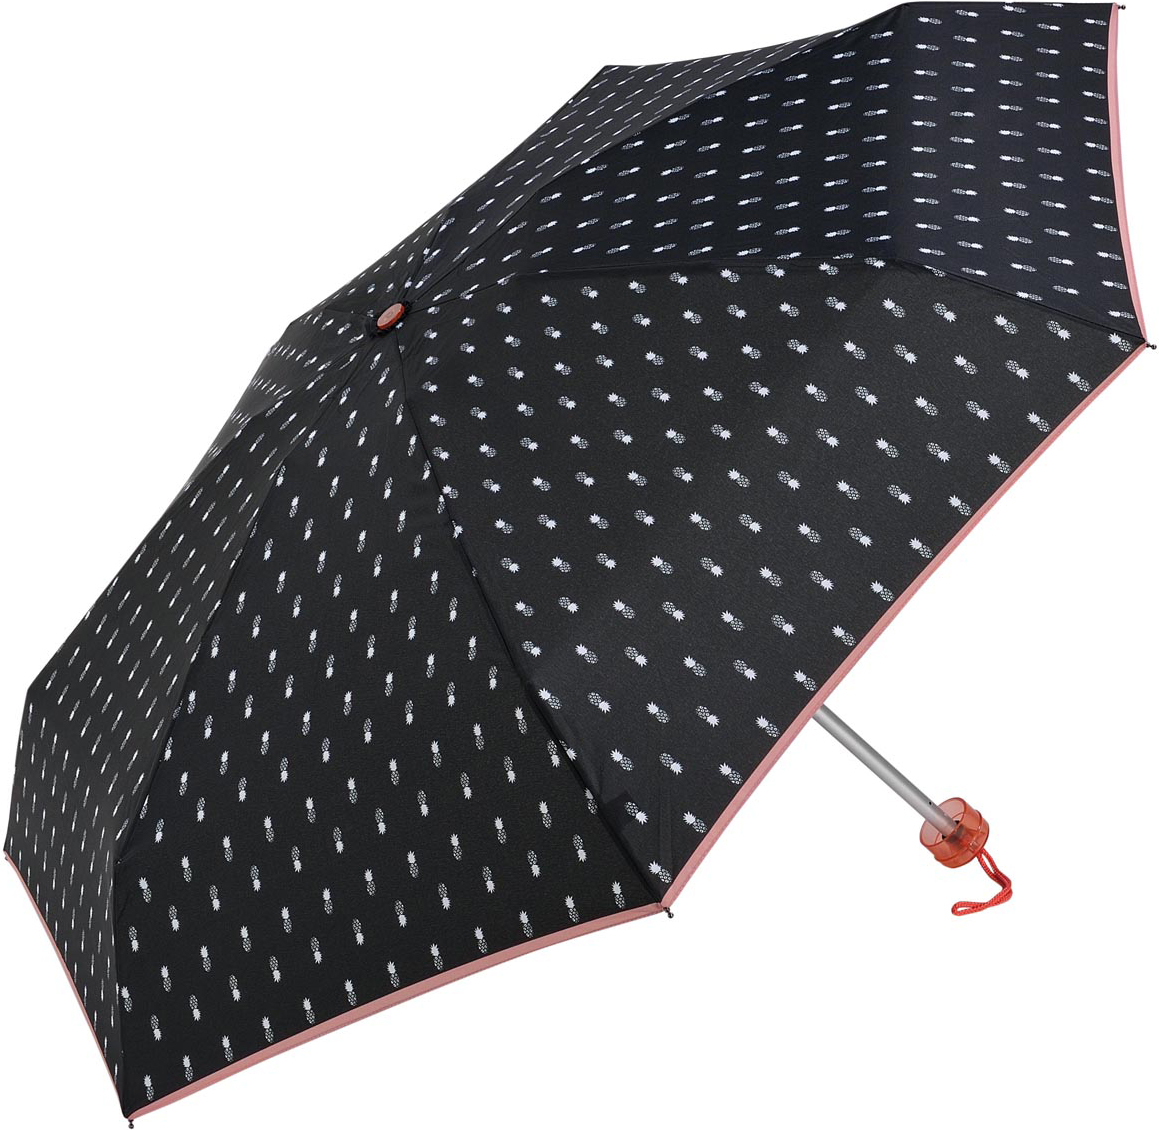 Зонт женский C-Collection, механика, 5 сложений, цвет: черно-белый. 561-3